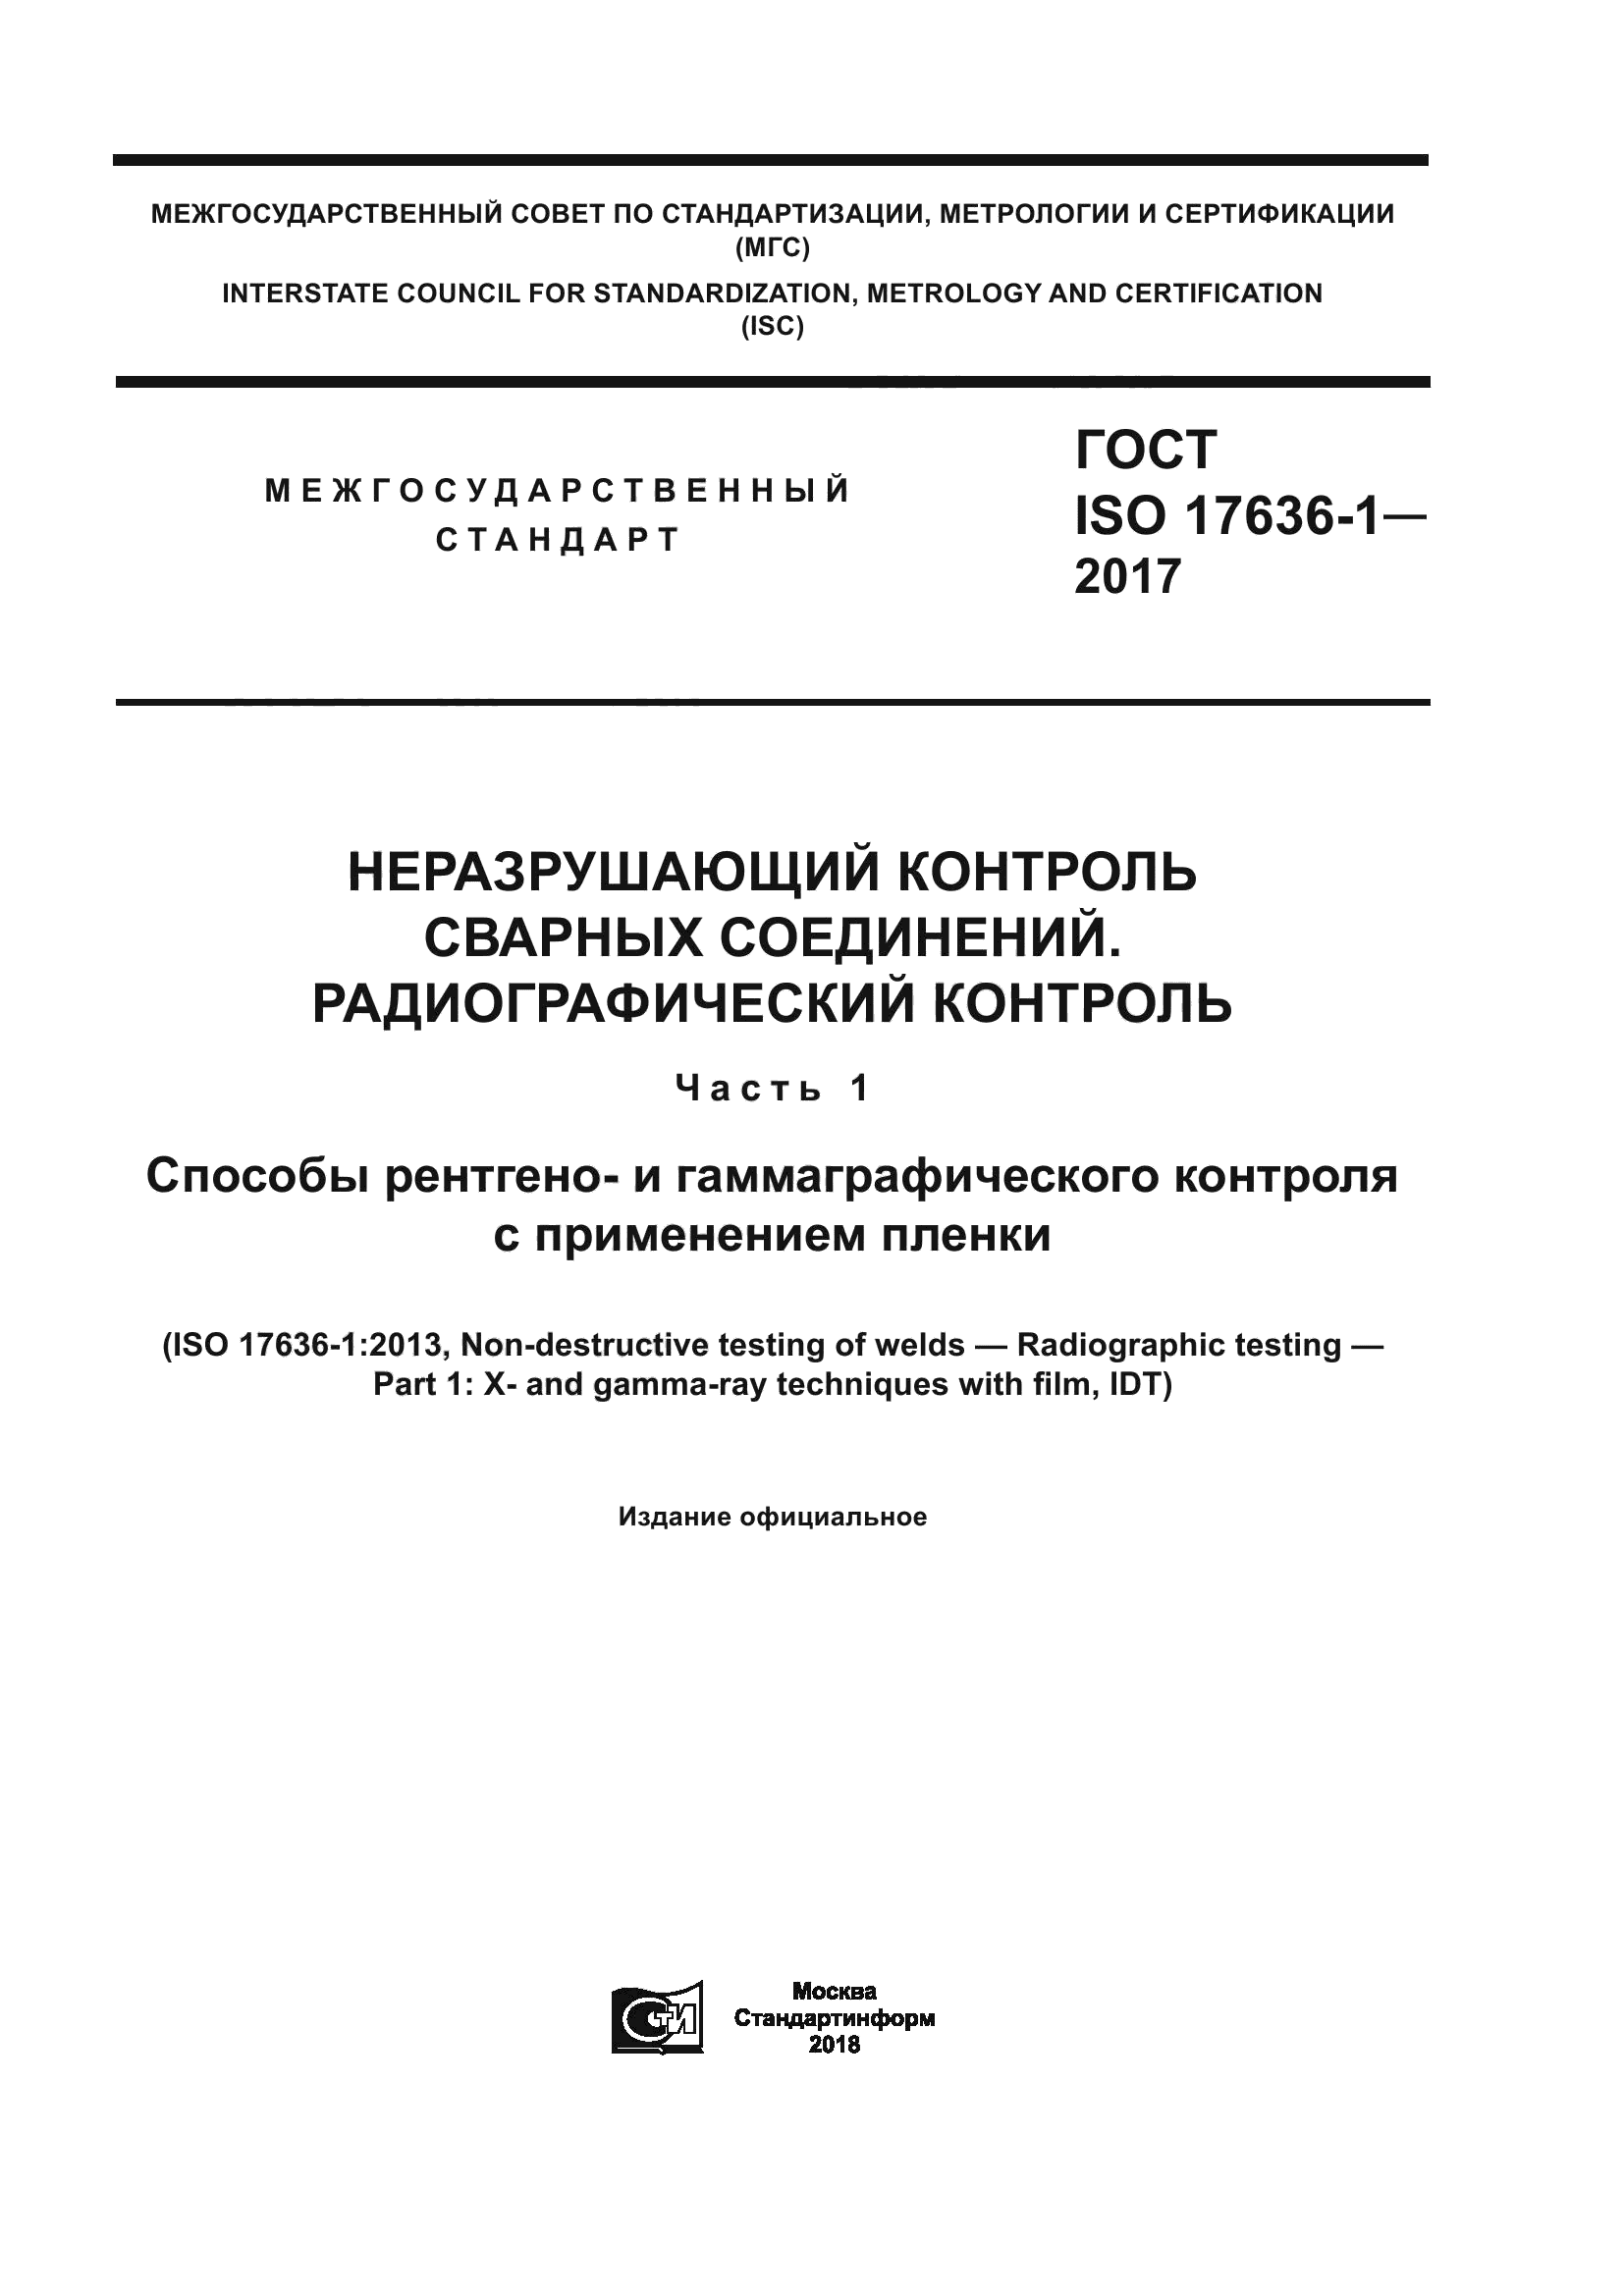 ГОСТ ISO 17636-1-2017